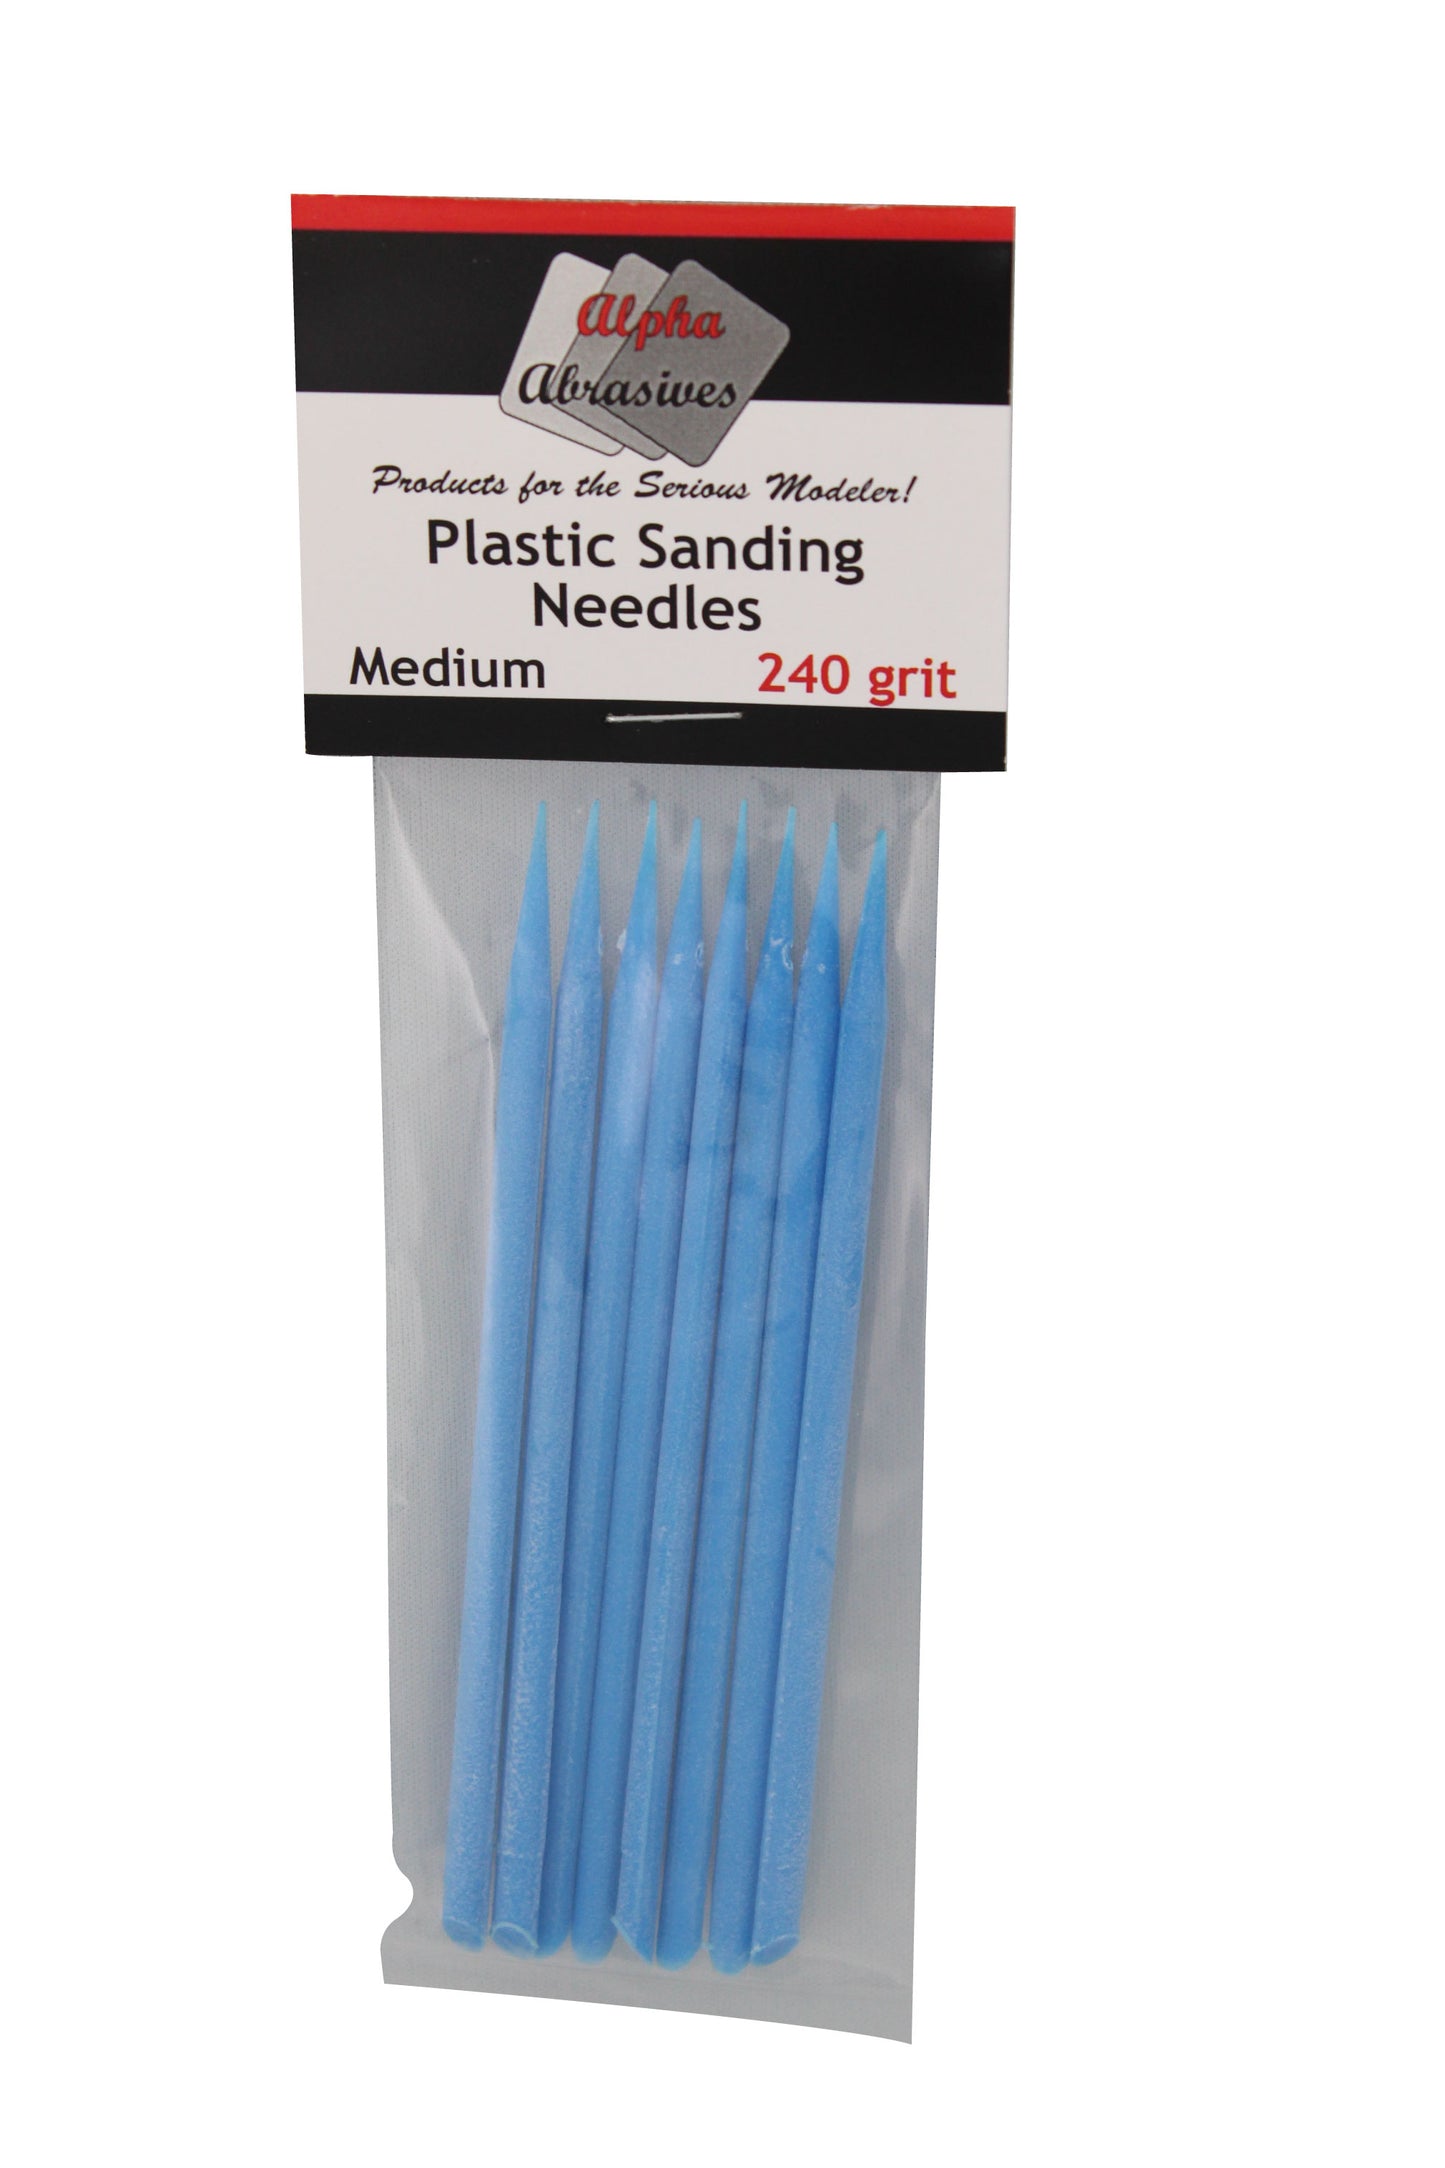 Plastic Sanding Needles